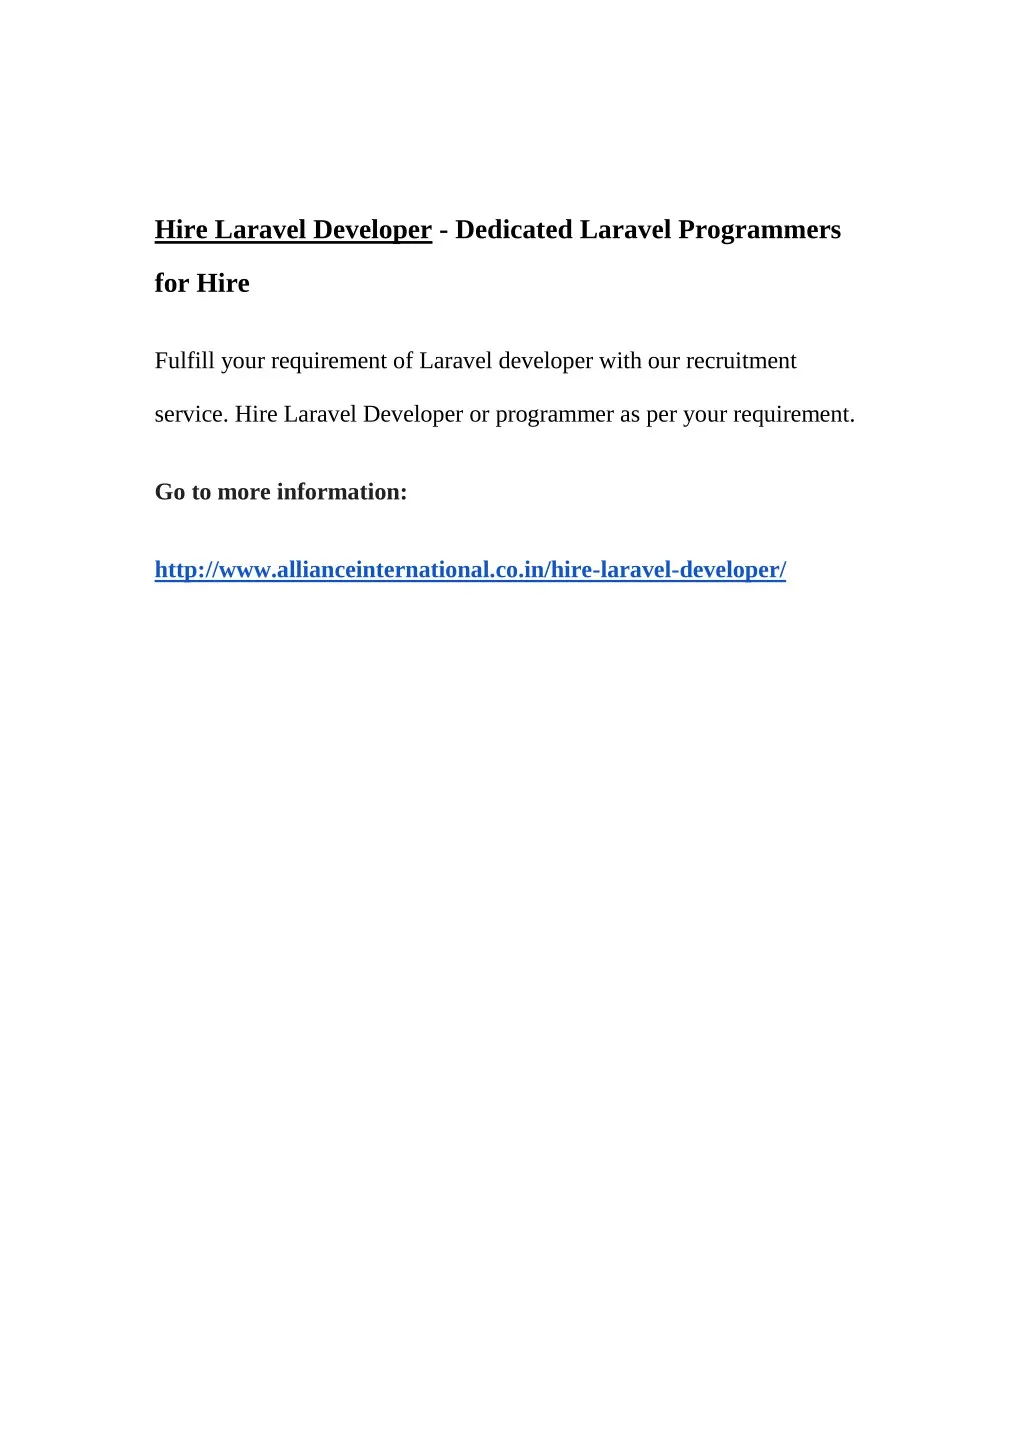 hire laravel developer dedicated laravel